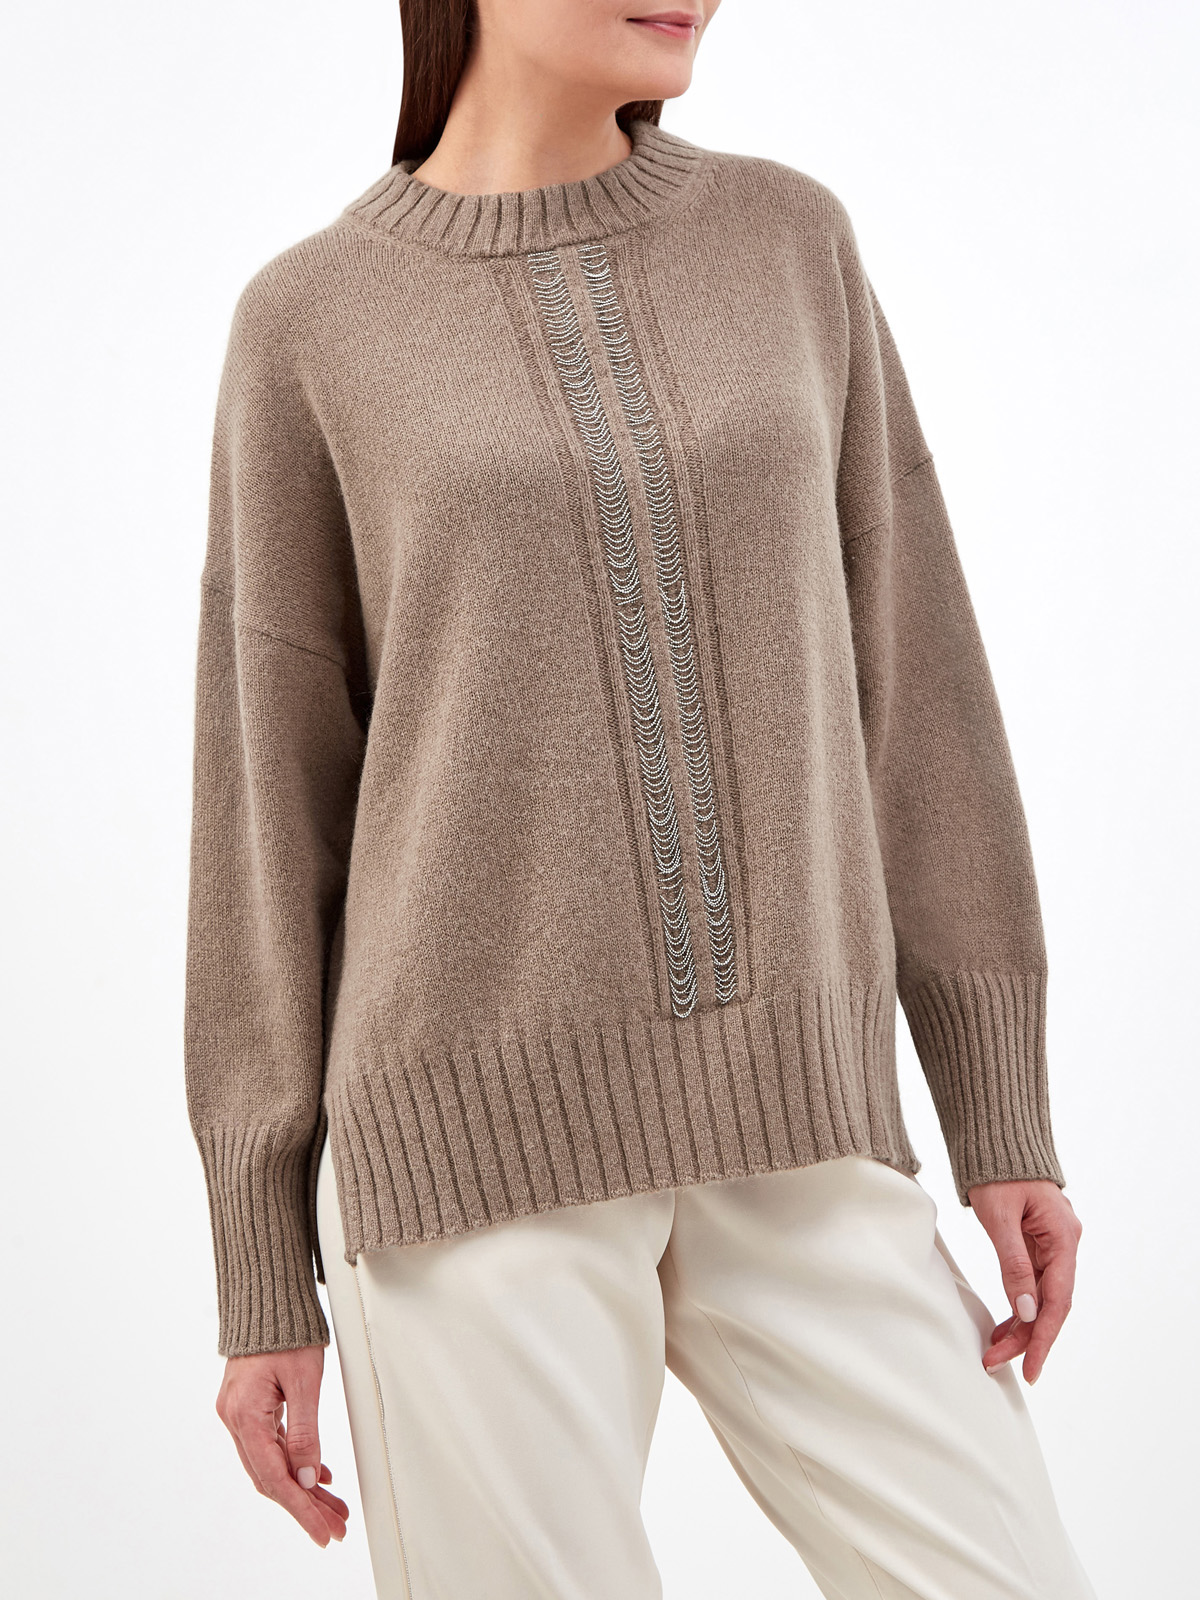 Джемпер из шерсти, шелка и кашемира с ювелирными цепочками PESERICO, цвет коричневый, размер 48;46 - фото 3